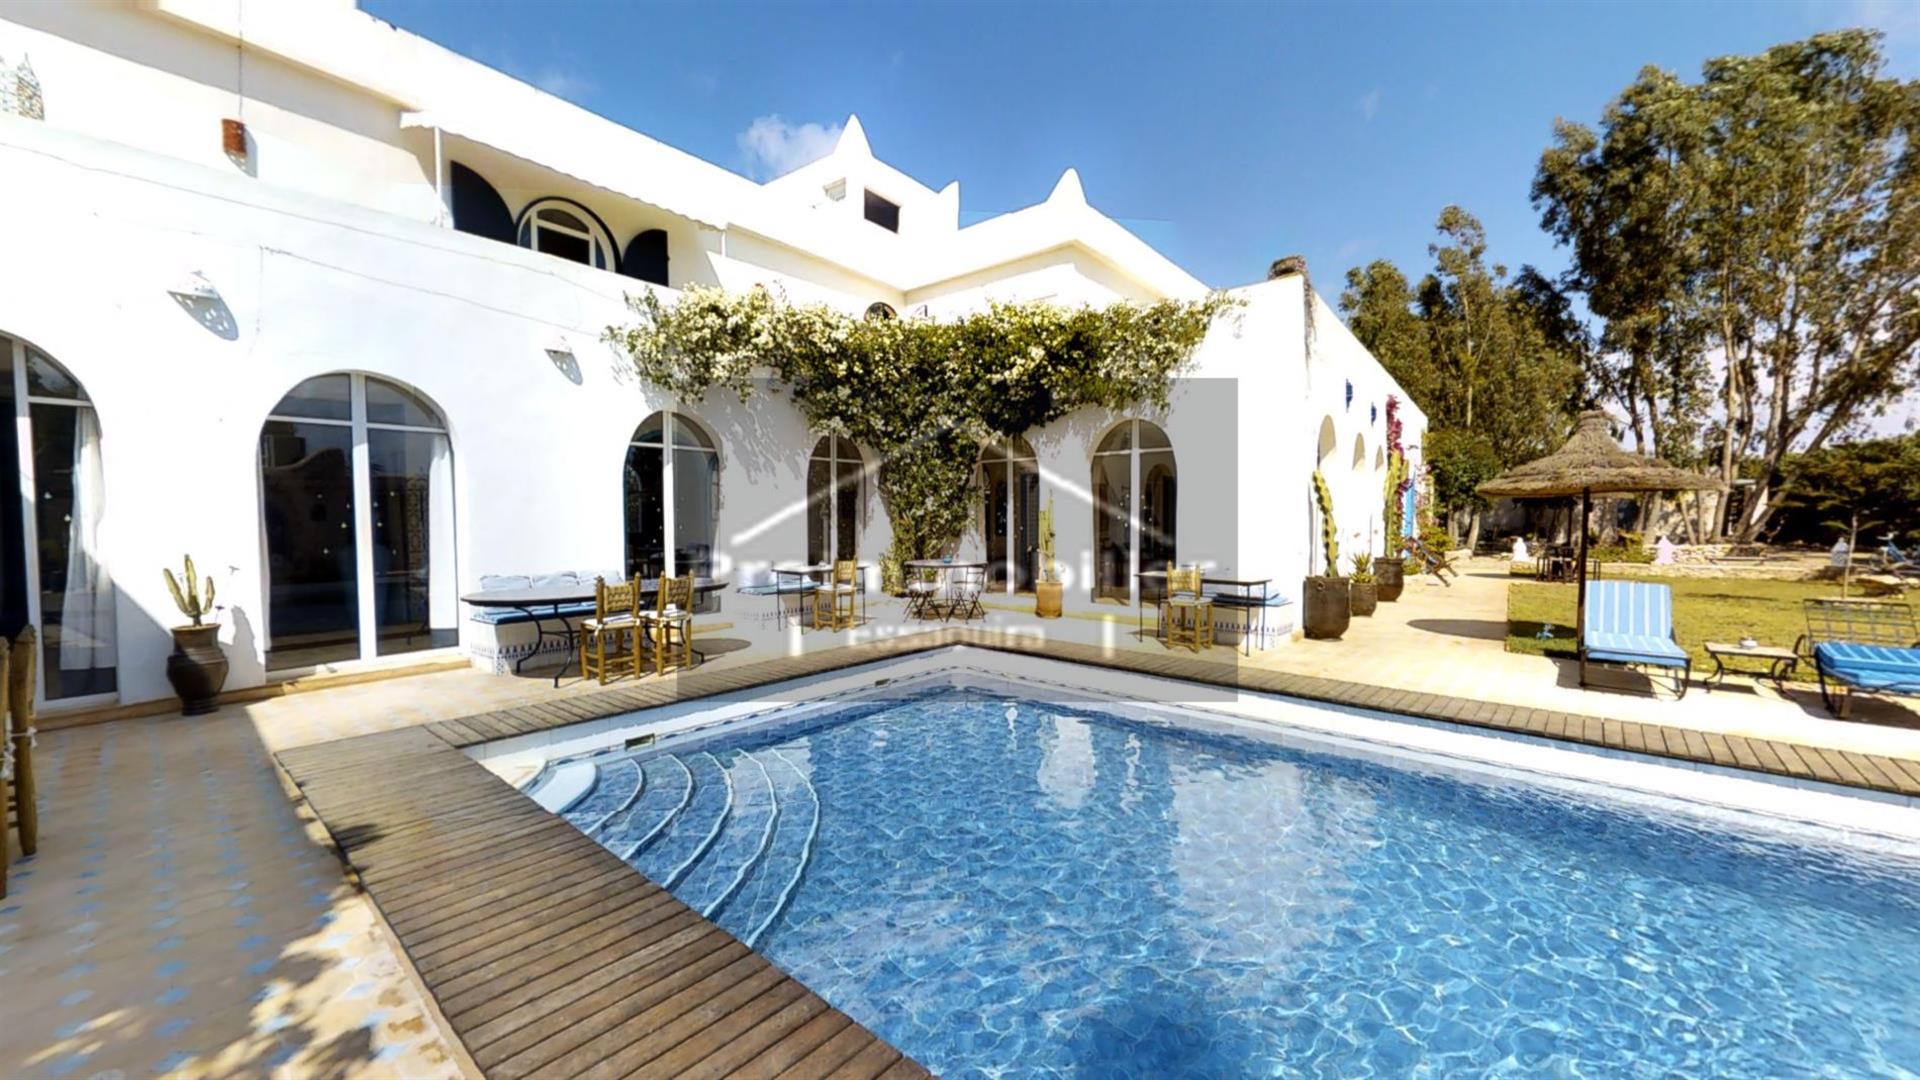 24-04-03-vmh Schönes Gästehaus von 750 m²zum Verkauf in Essaouira Garten 4989m²